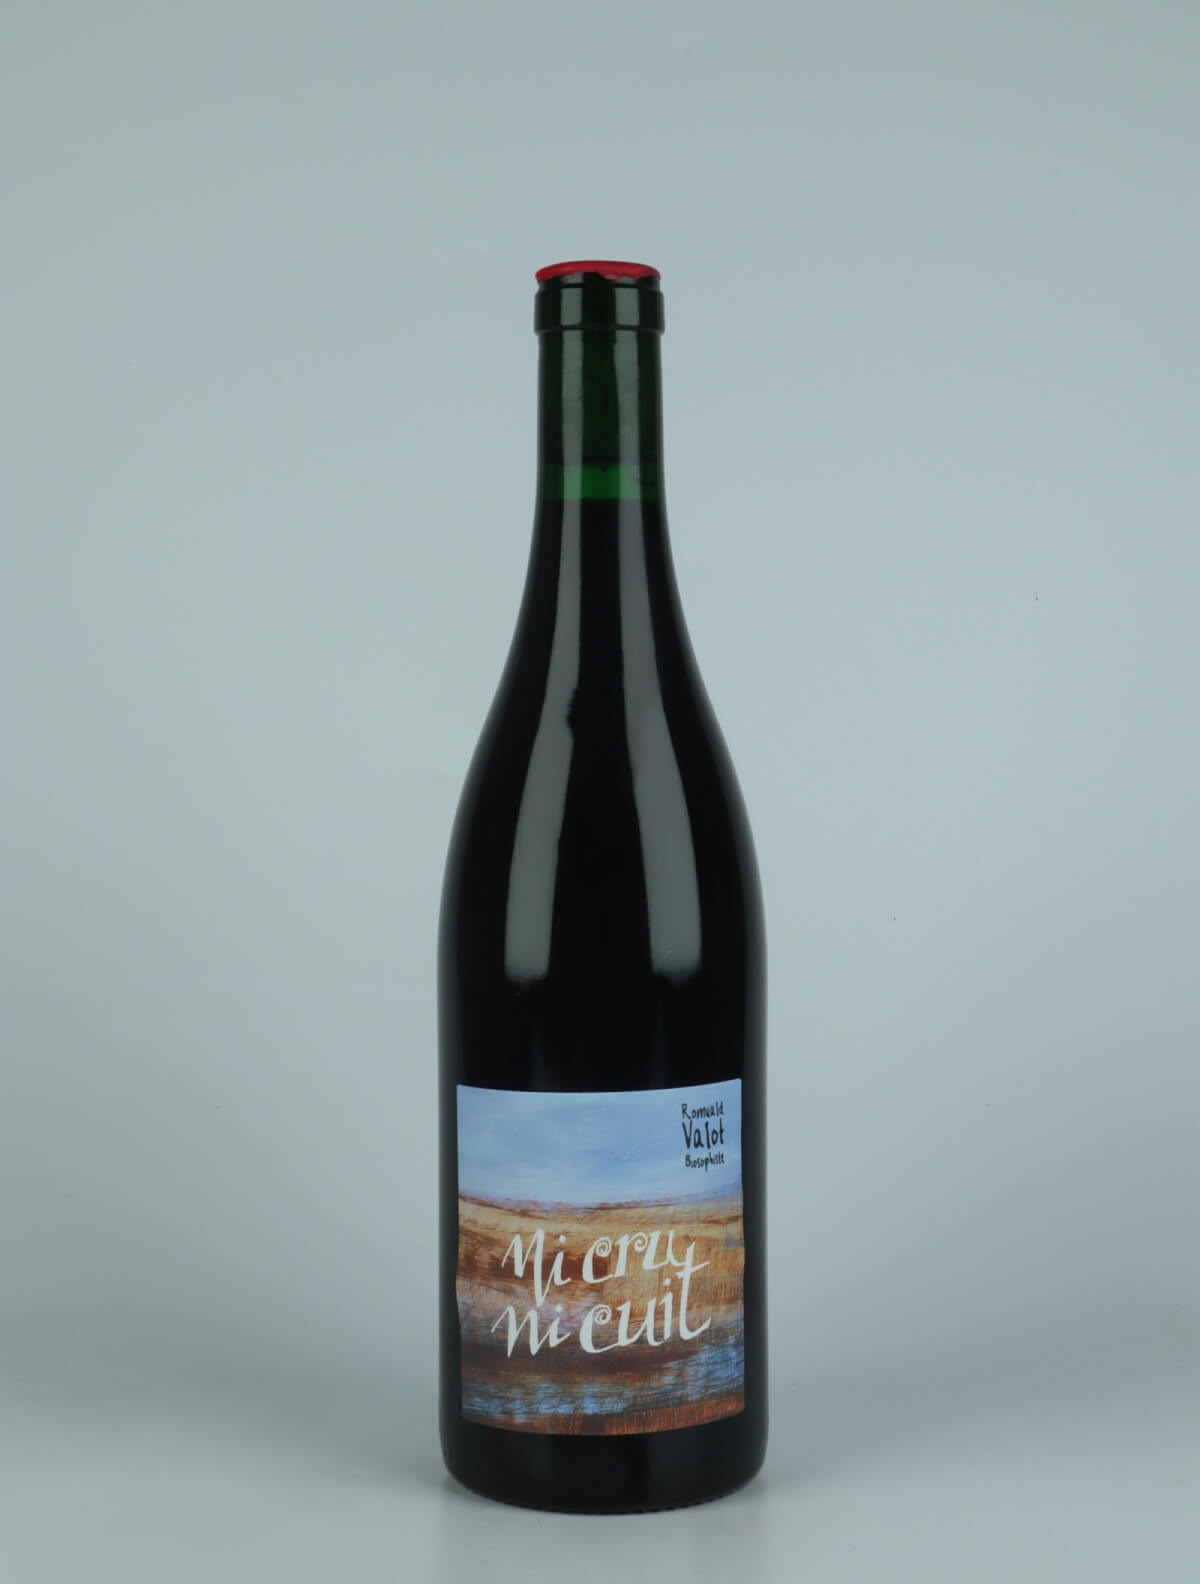 En flaske 2022 Ni Cru ni Cuit Rødvin fra Romuald Valot, Beaujolais i Frankrig